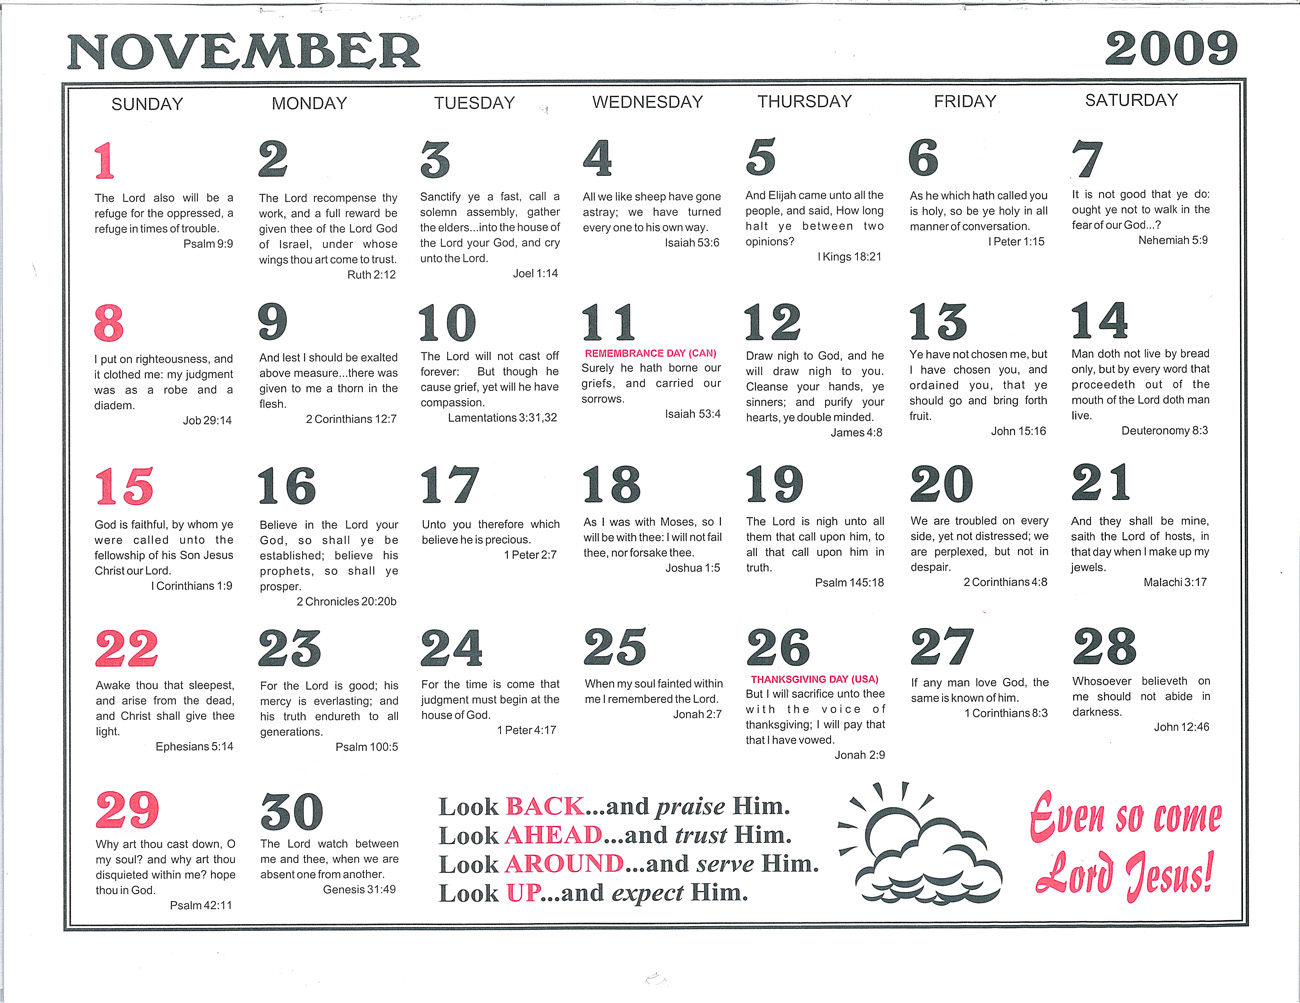 November: 2009 Daily Bible Text Calendar